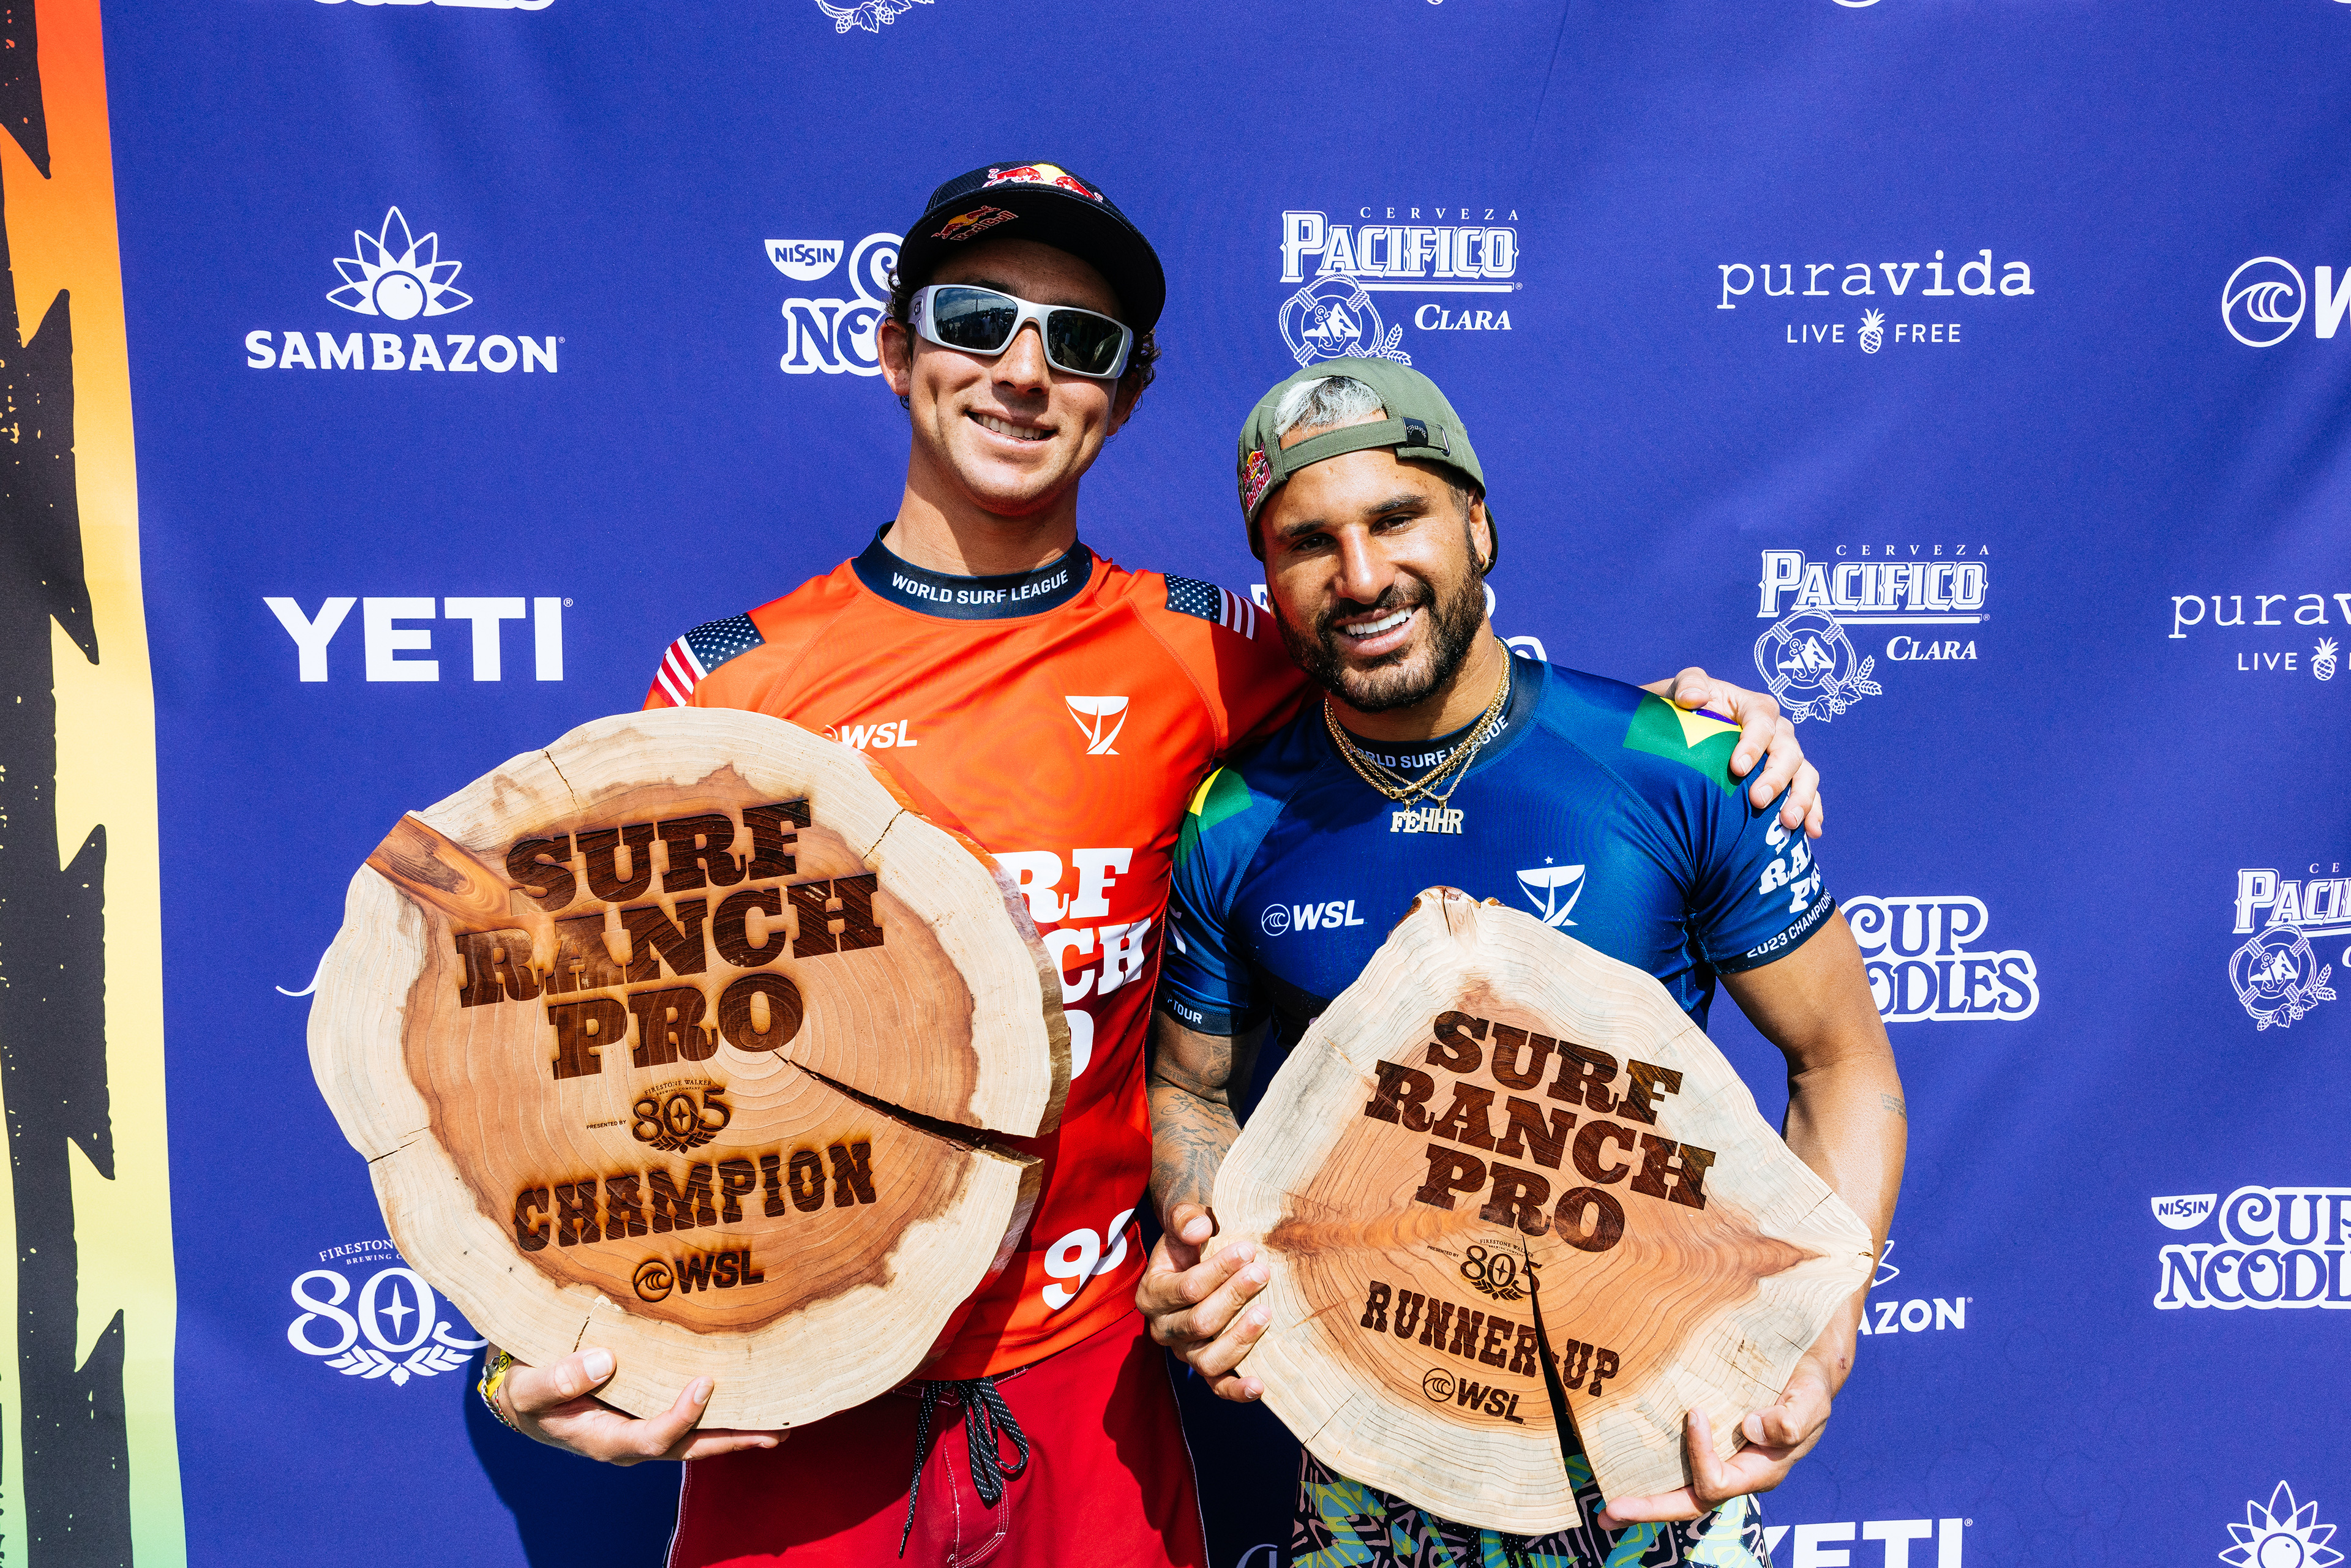 O campeão e o vice do Surf Ranch Pro, Griffin Colapinto e Italo Ferreira.